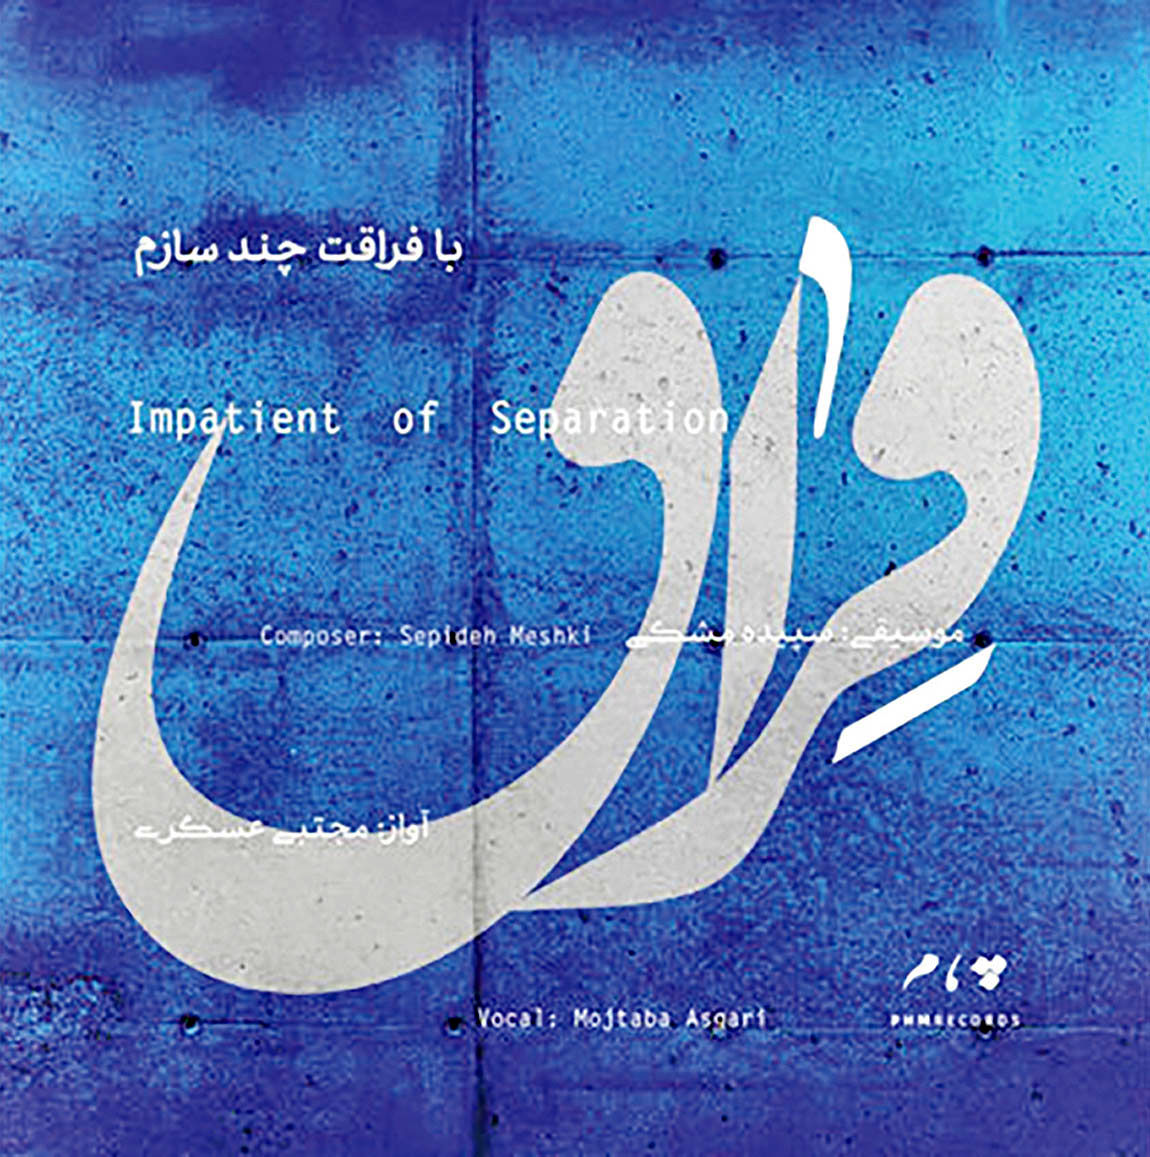 آلبوم موسیقی ایرانی، برگزیده رادیوی اسپانیا شد